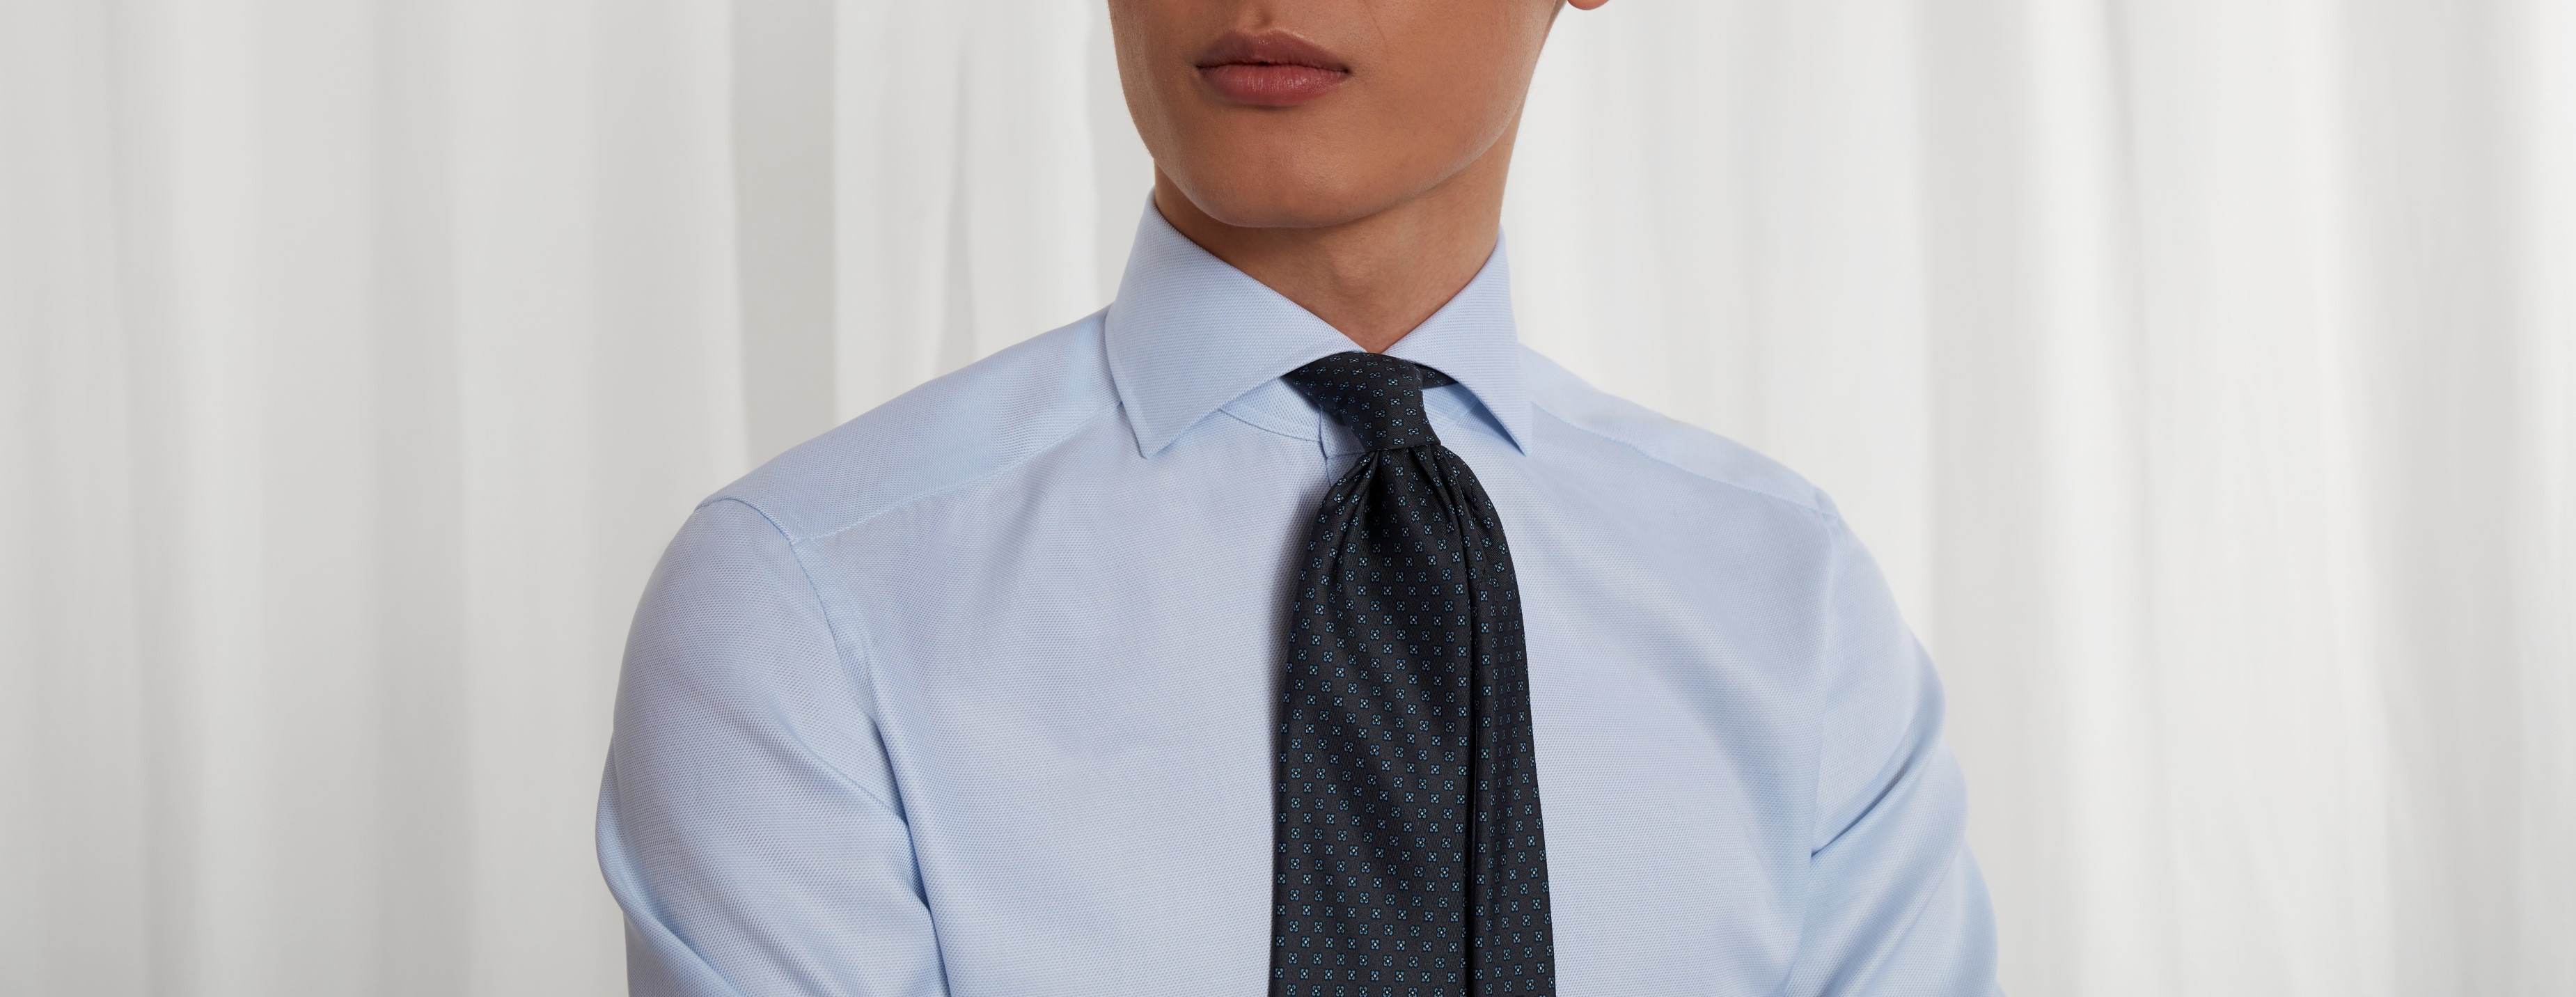 Tie, Tie tying guide, Fashion tips, Men's dress shirts, 3700x1440 Dual Screen Desktop